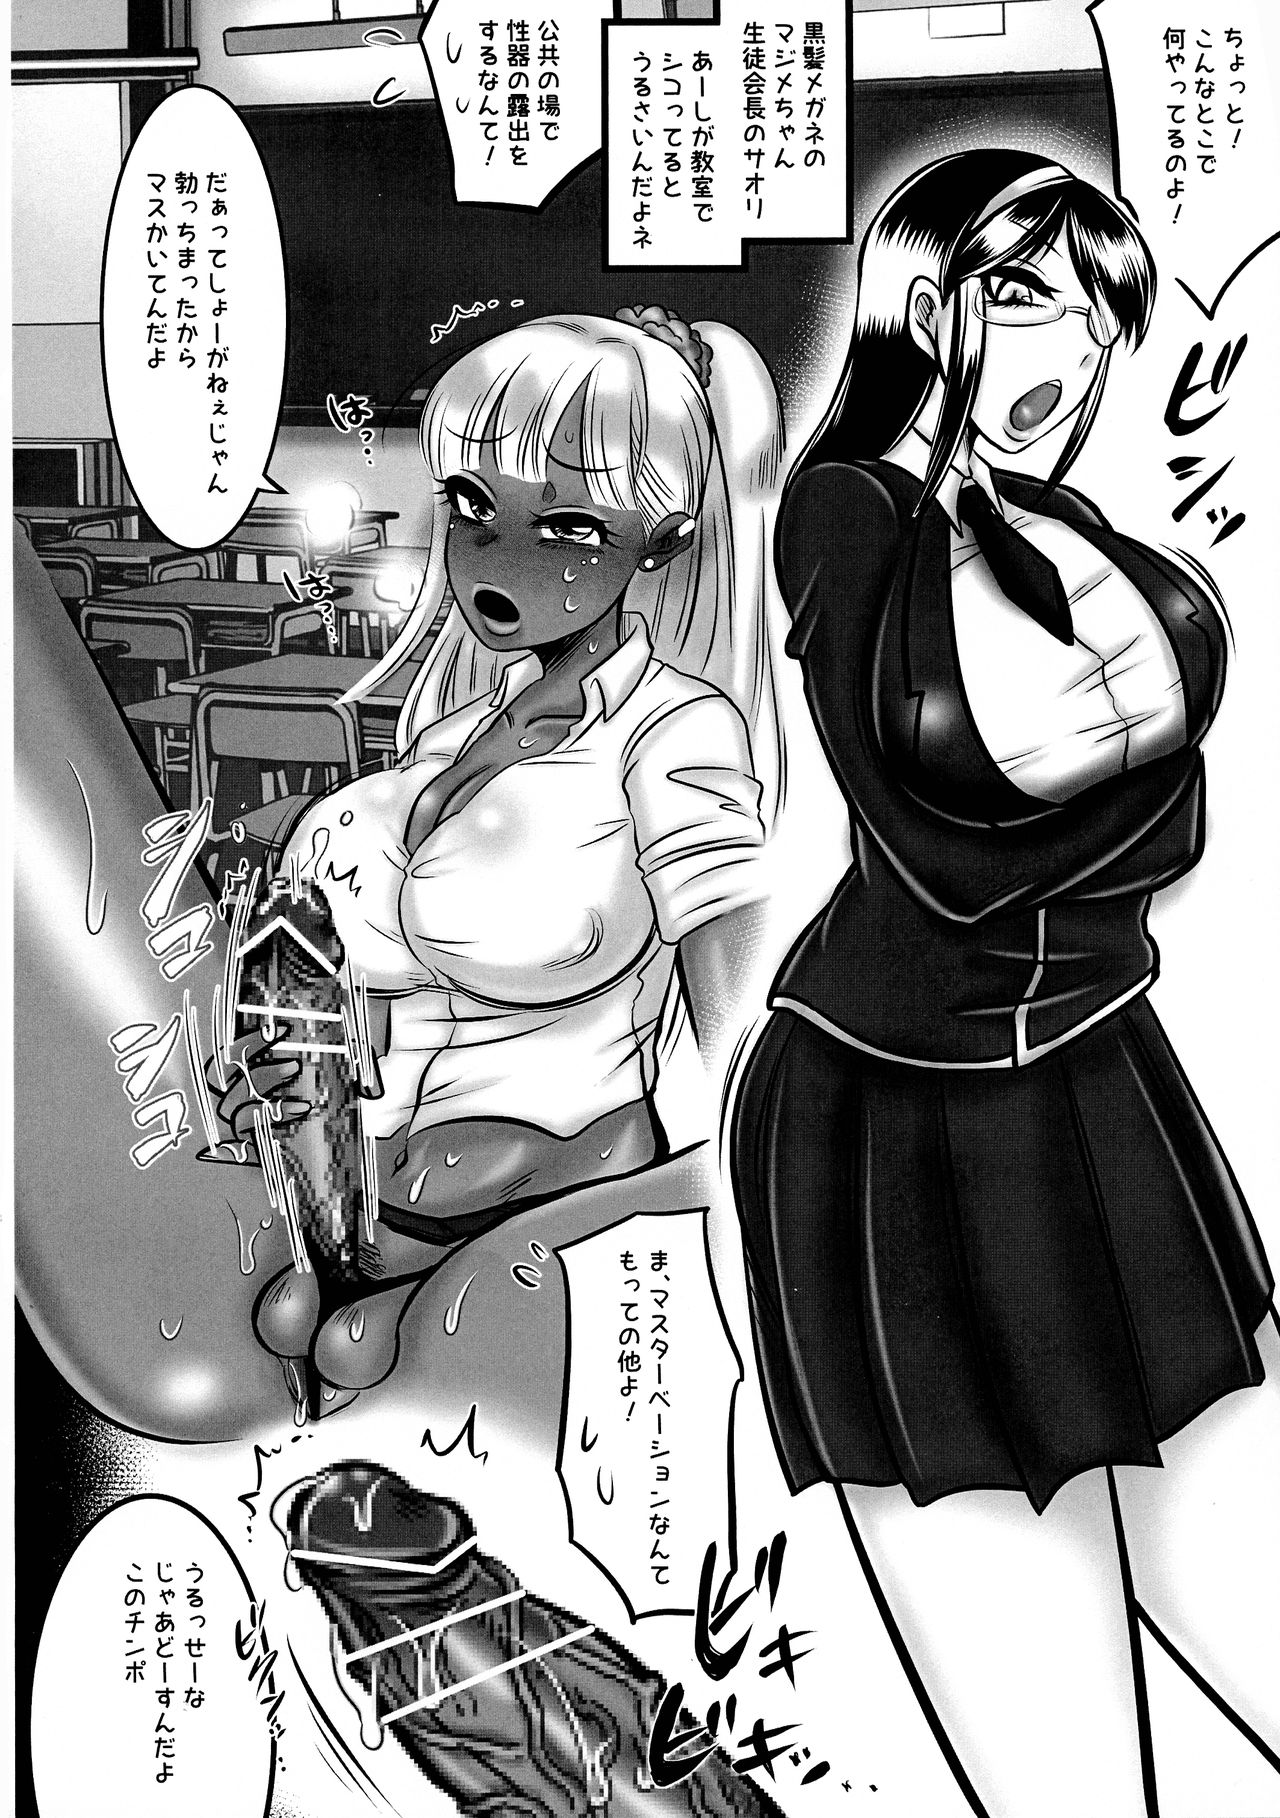 Ninshin Suru Porn Hd - Futanari Gyaru ga Jiko Ninshin Suru Manga! - Page 5 - HentaiEra